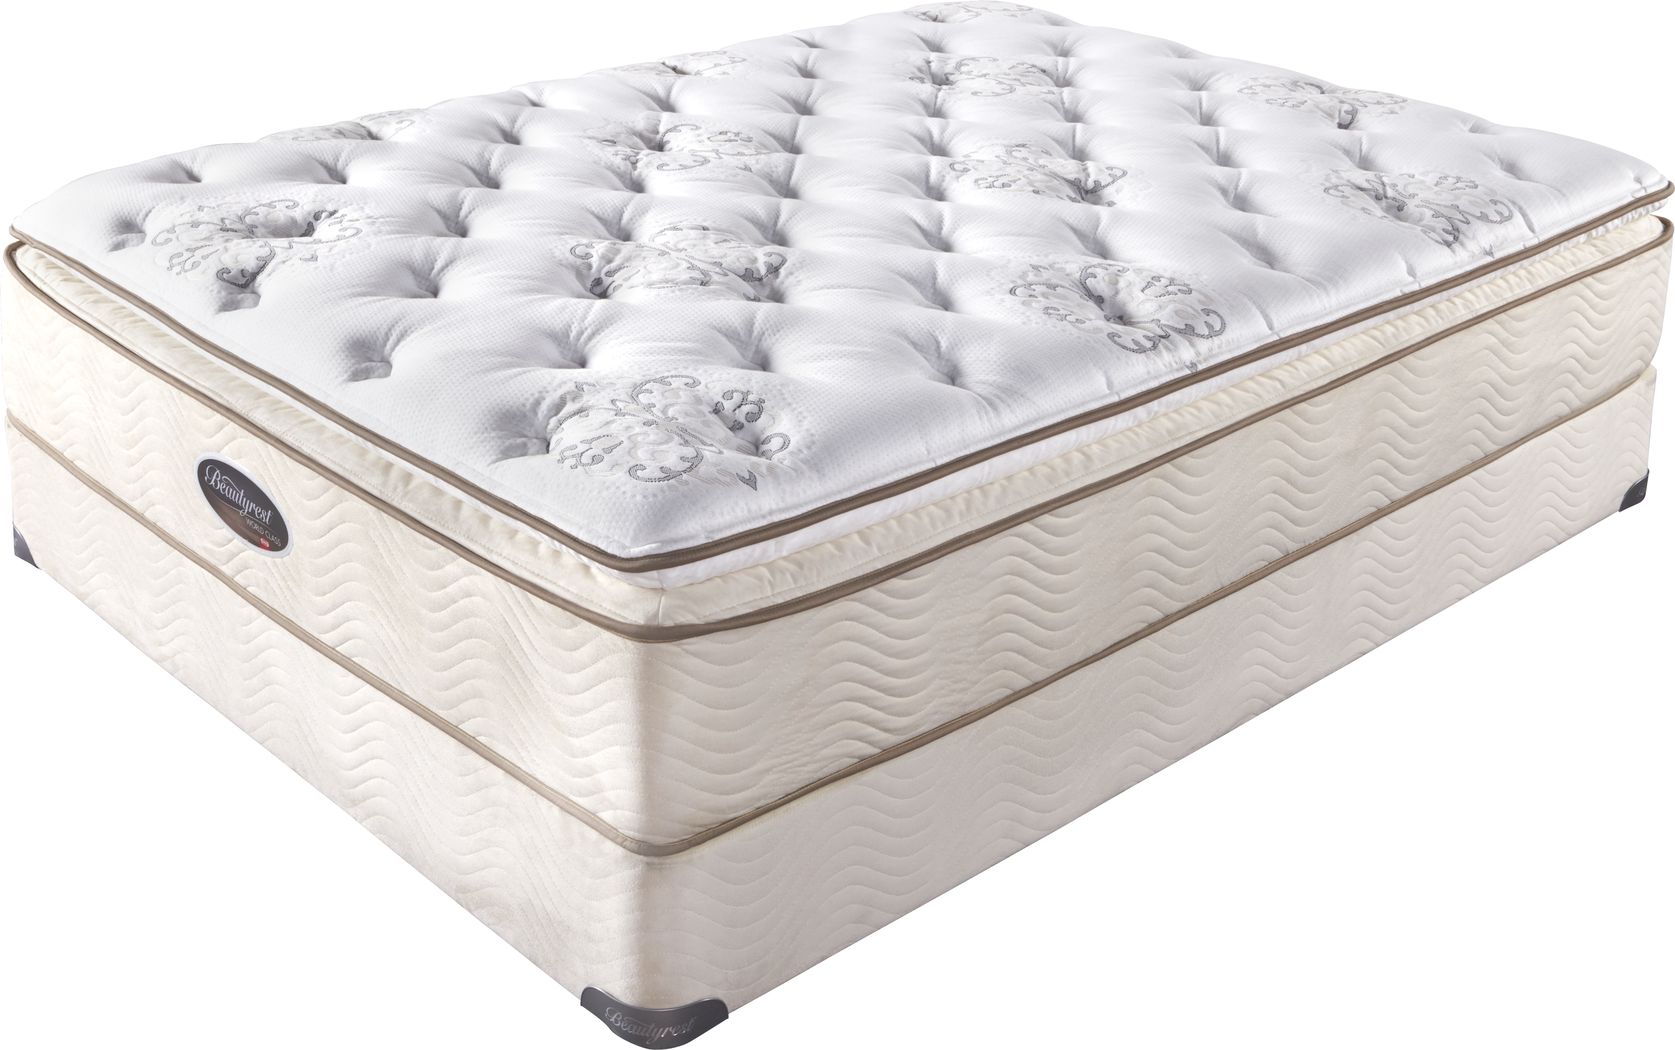 beautyrest king mattress costco